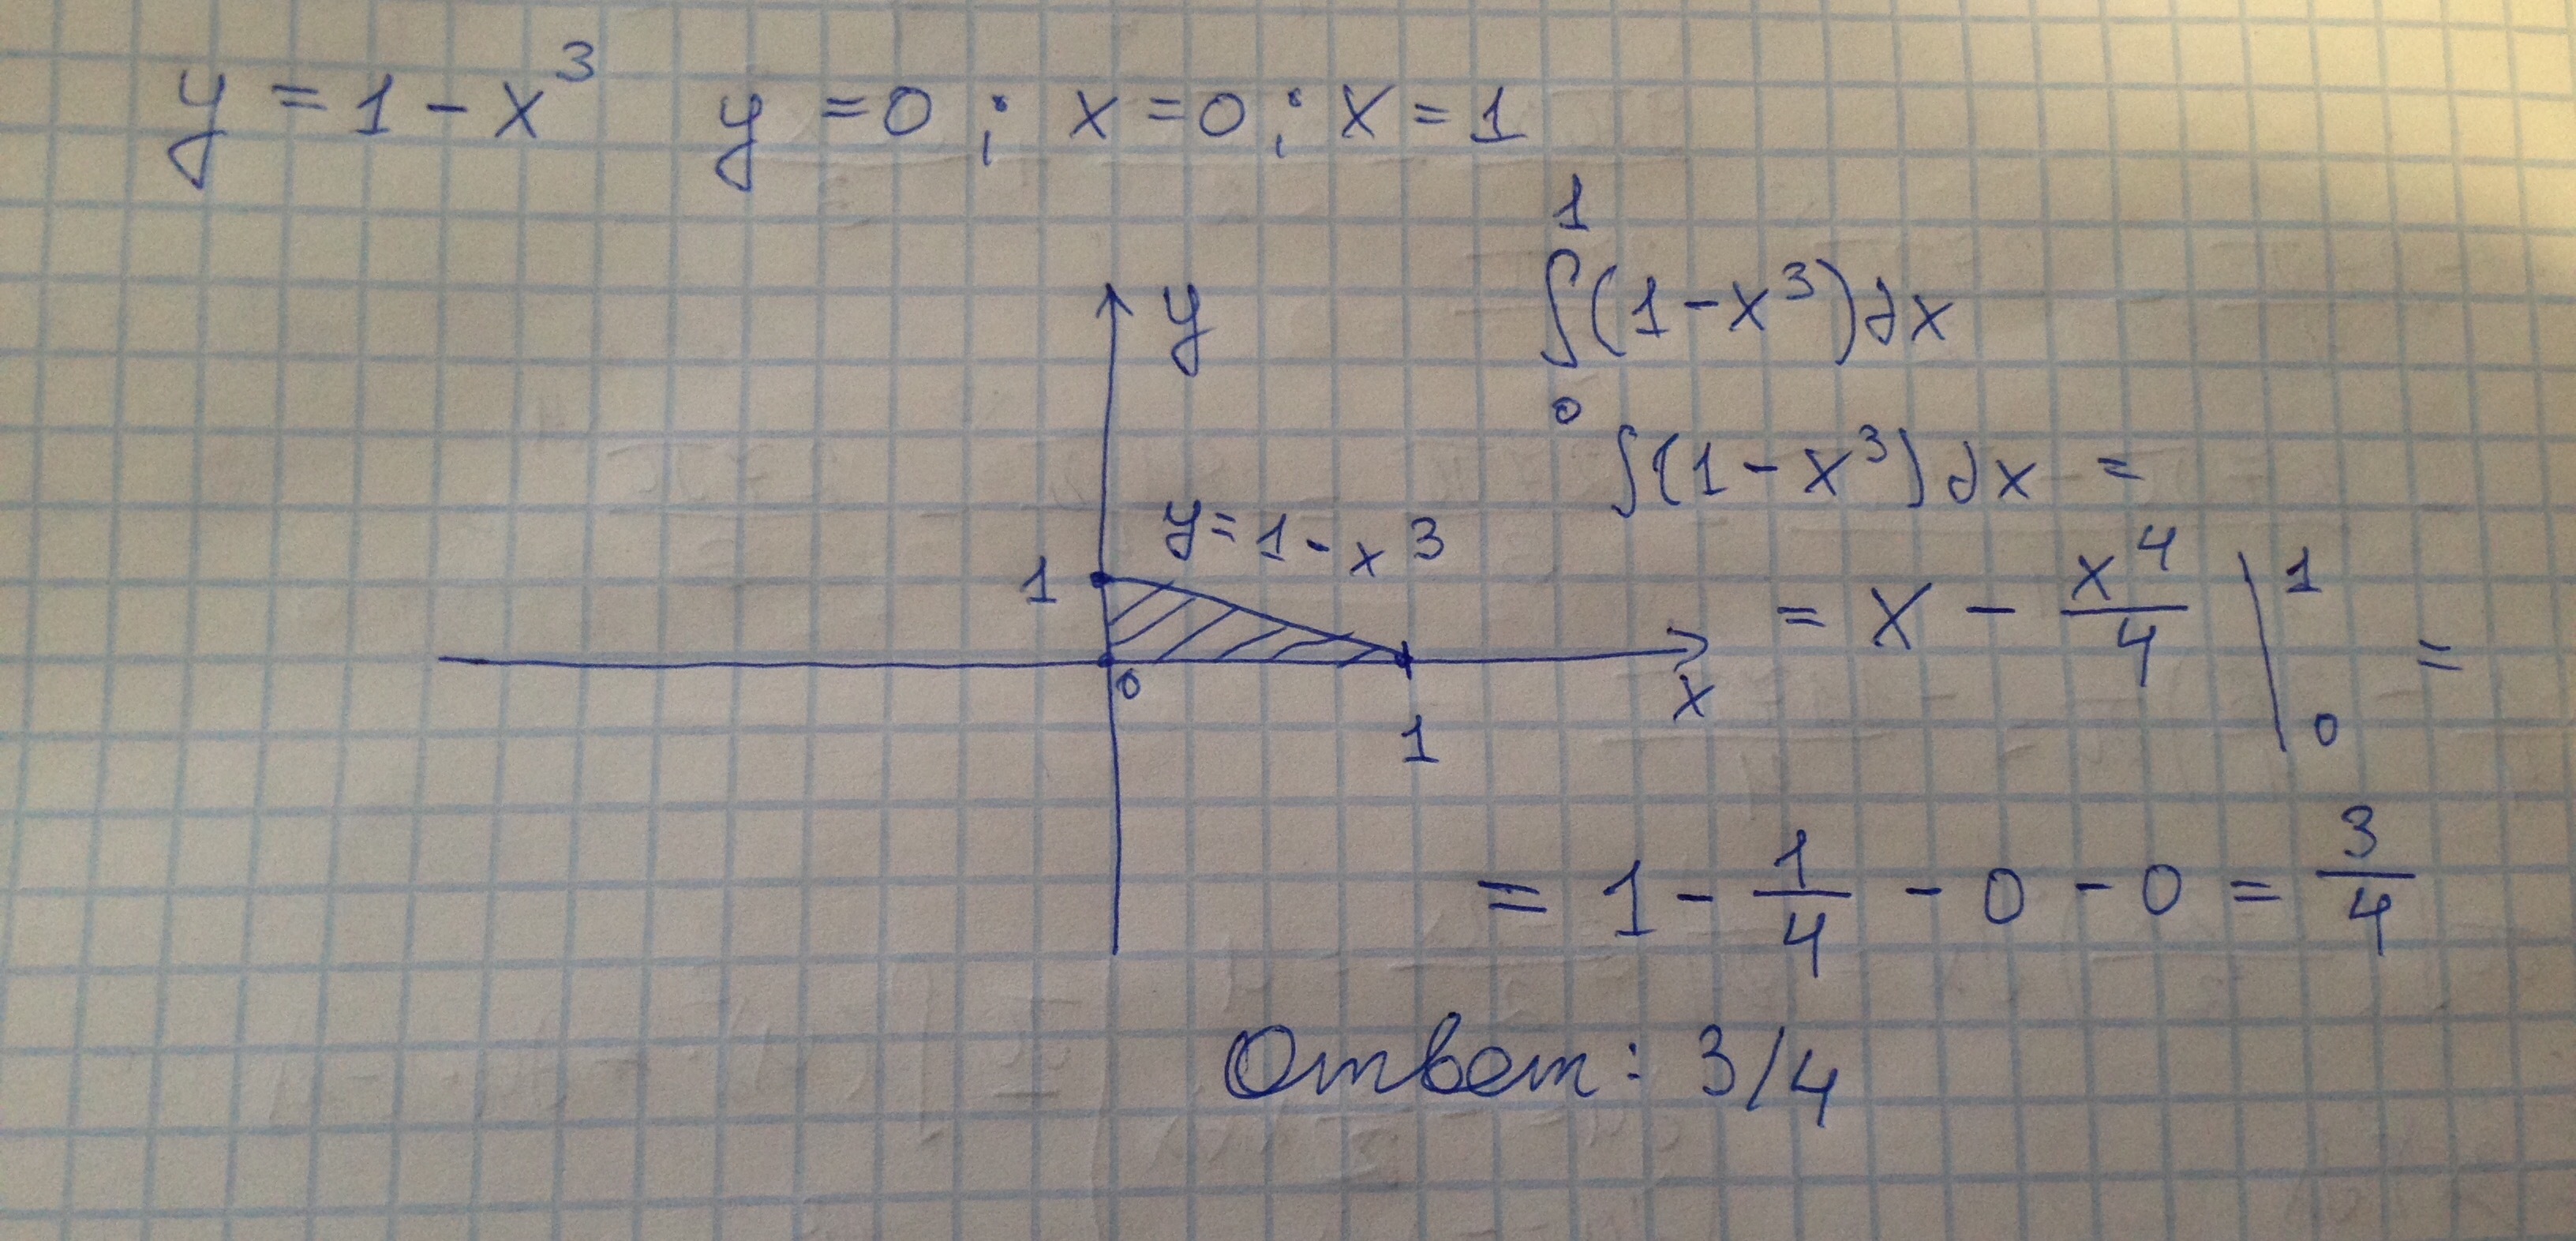 Х у 1 х у 19. Вычислите площадь фигуры ограниченной линиями у 1 х3 у 0 х -1. Вычислите площадь фигуры s ограниченной линиями у 1 х3 у 0 х 0 х 1. Вычислите площадь фигуры ограниченной линиями у х3 у 0 х -3 х 1. Вычислите площадь фигуры ограниченной линиями у х3 у 0 х 2.